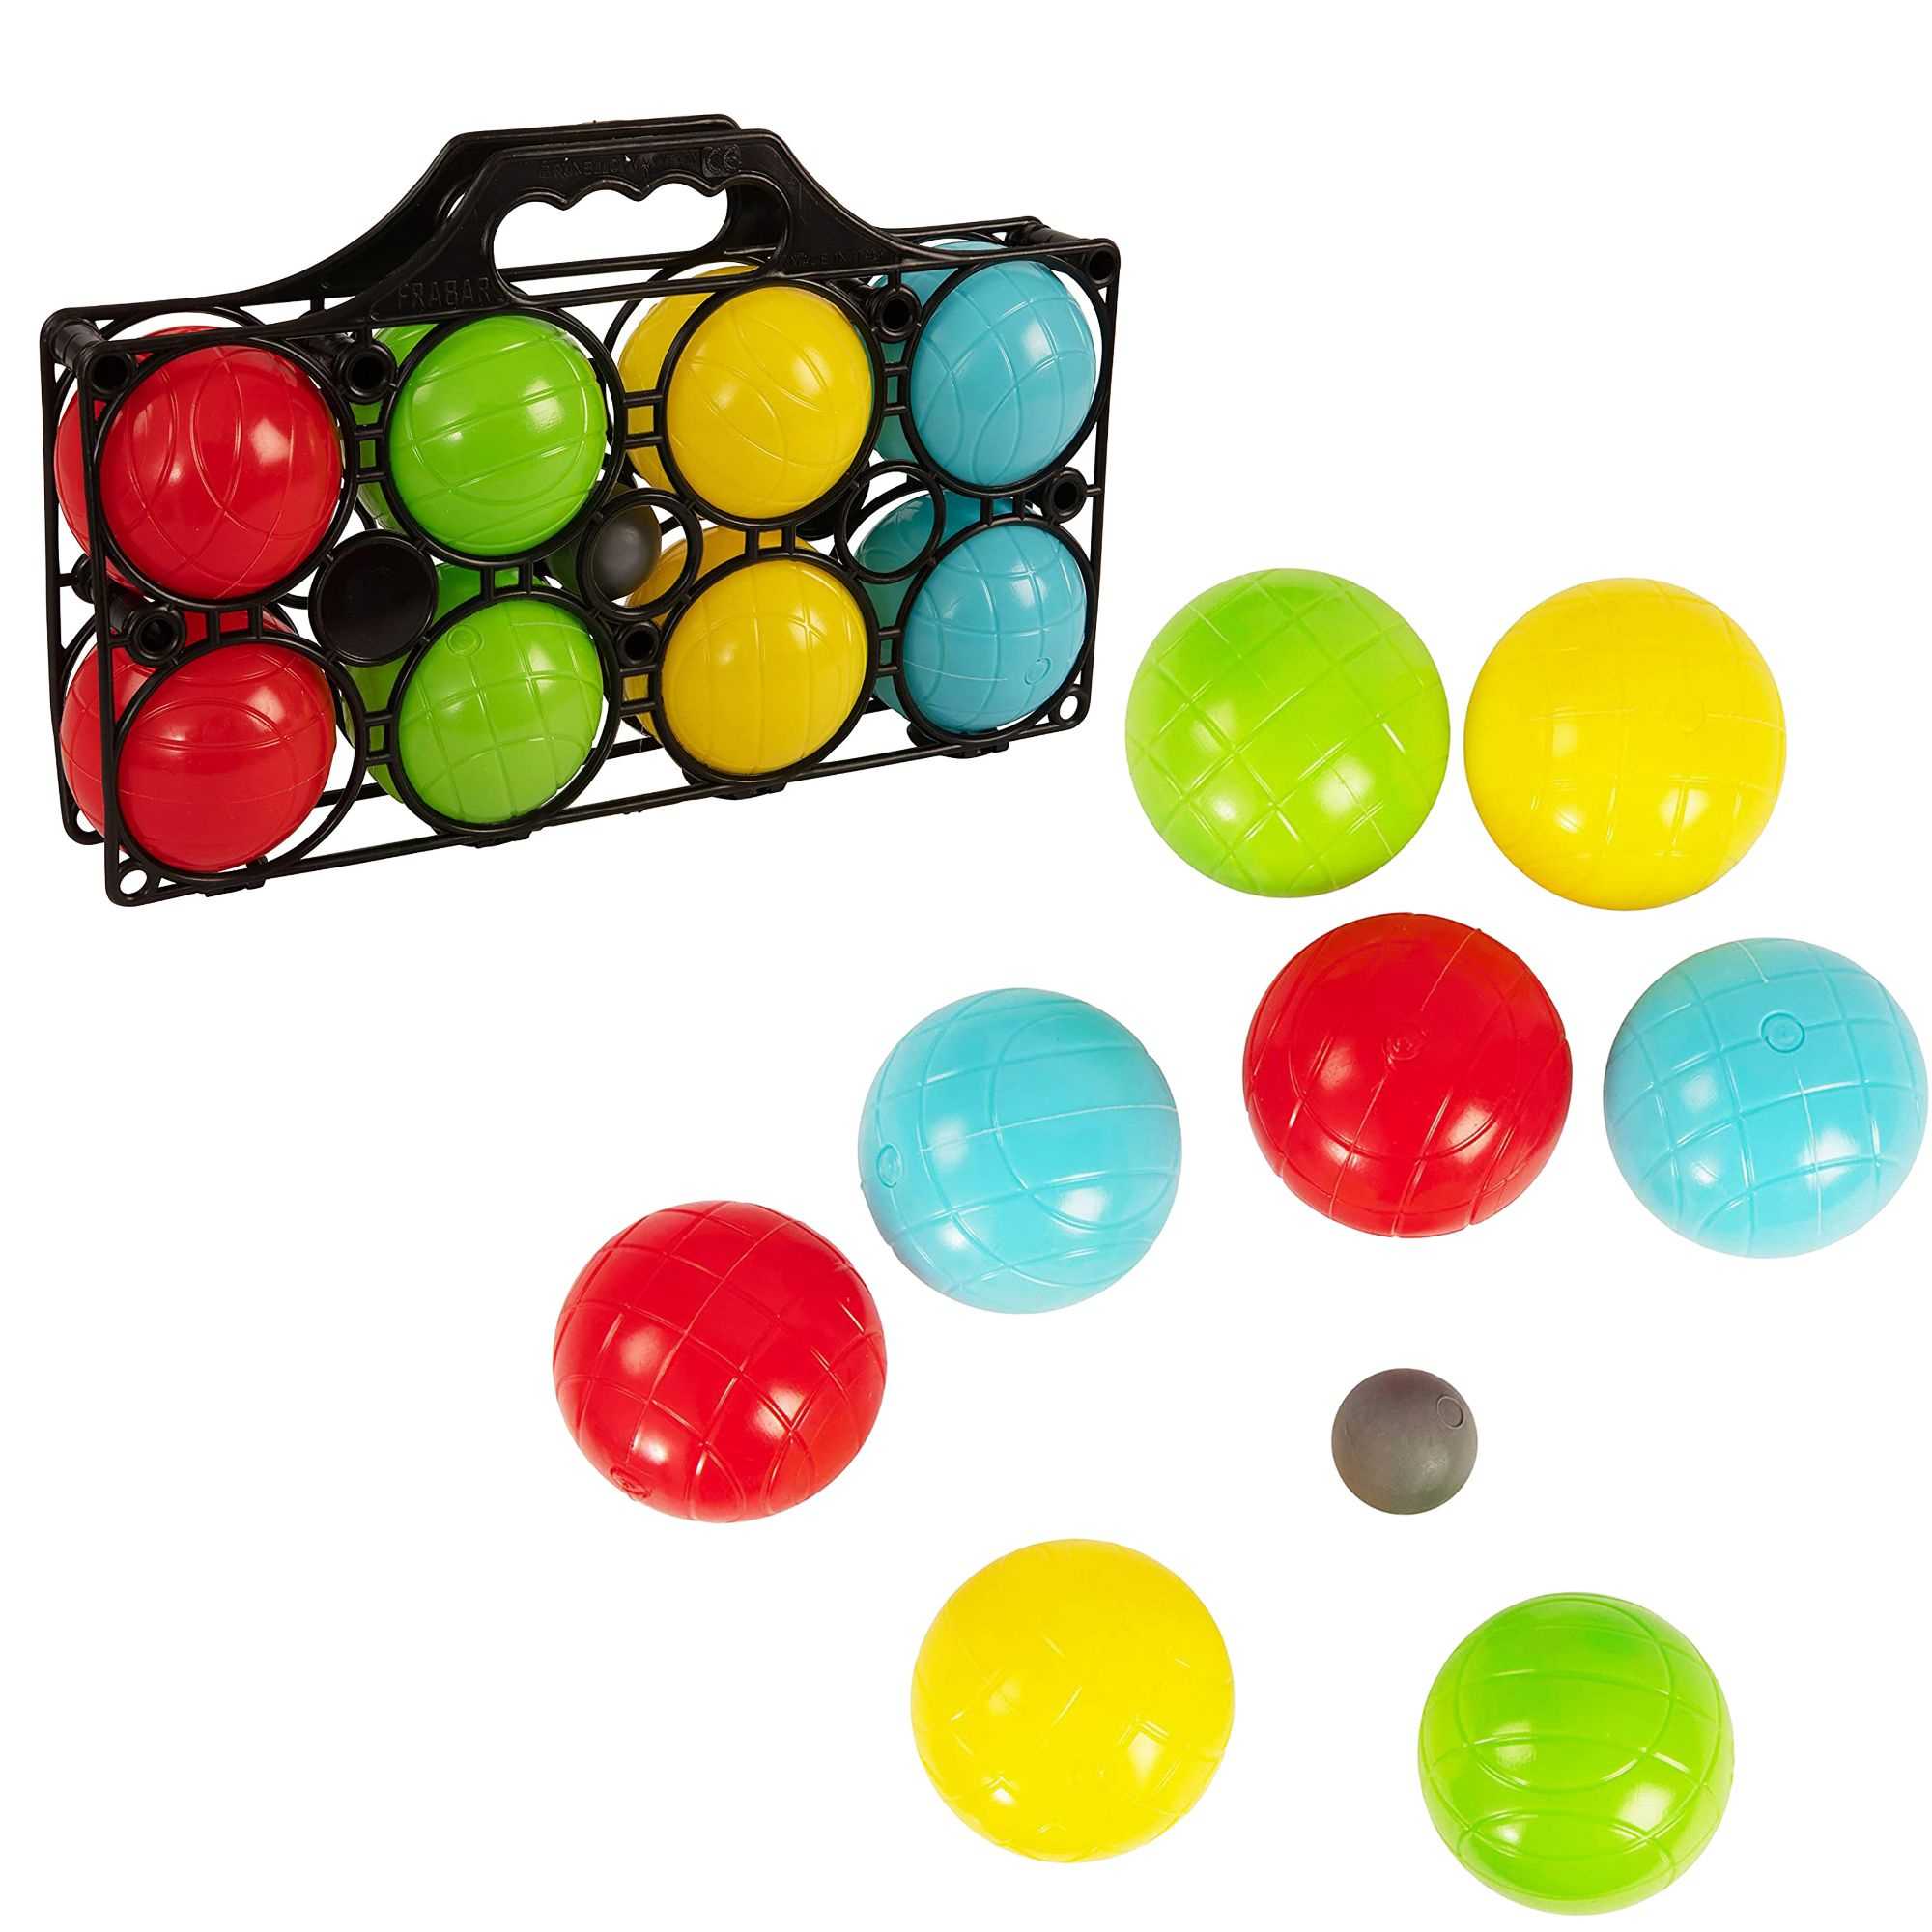 8 Ball Petanque / Boule Set - Traditional Garden Games